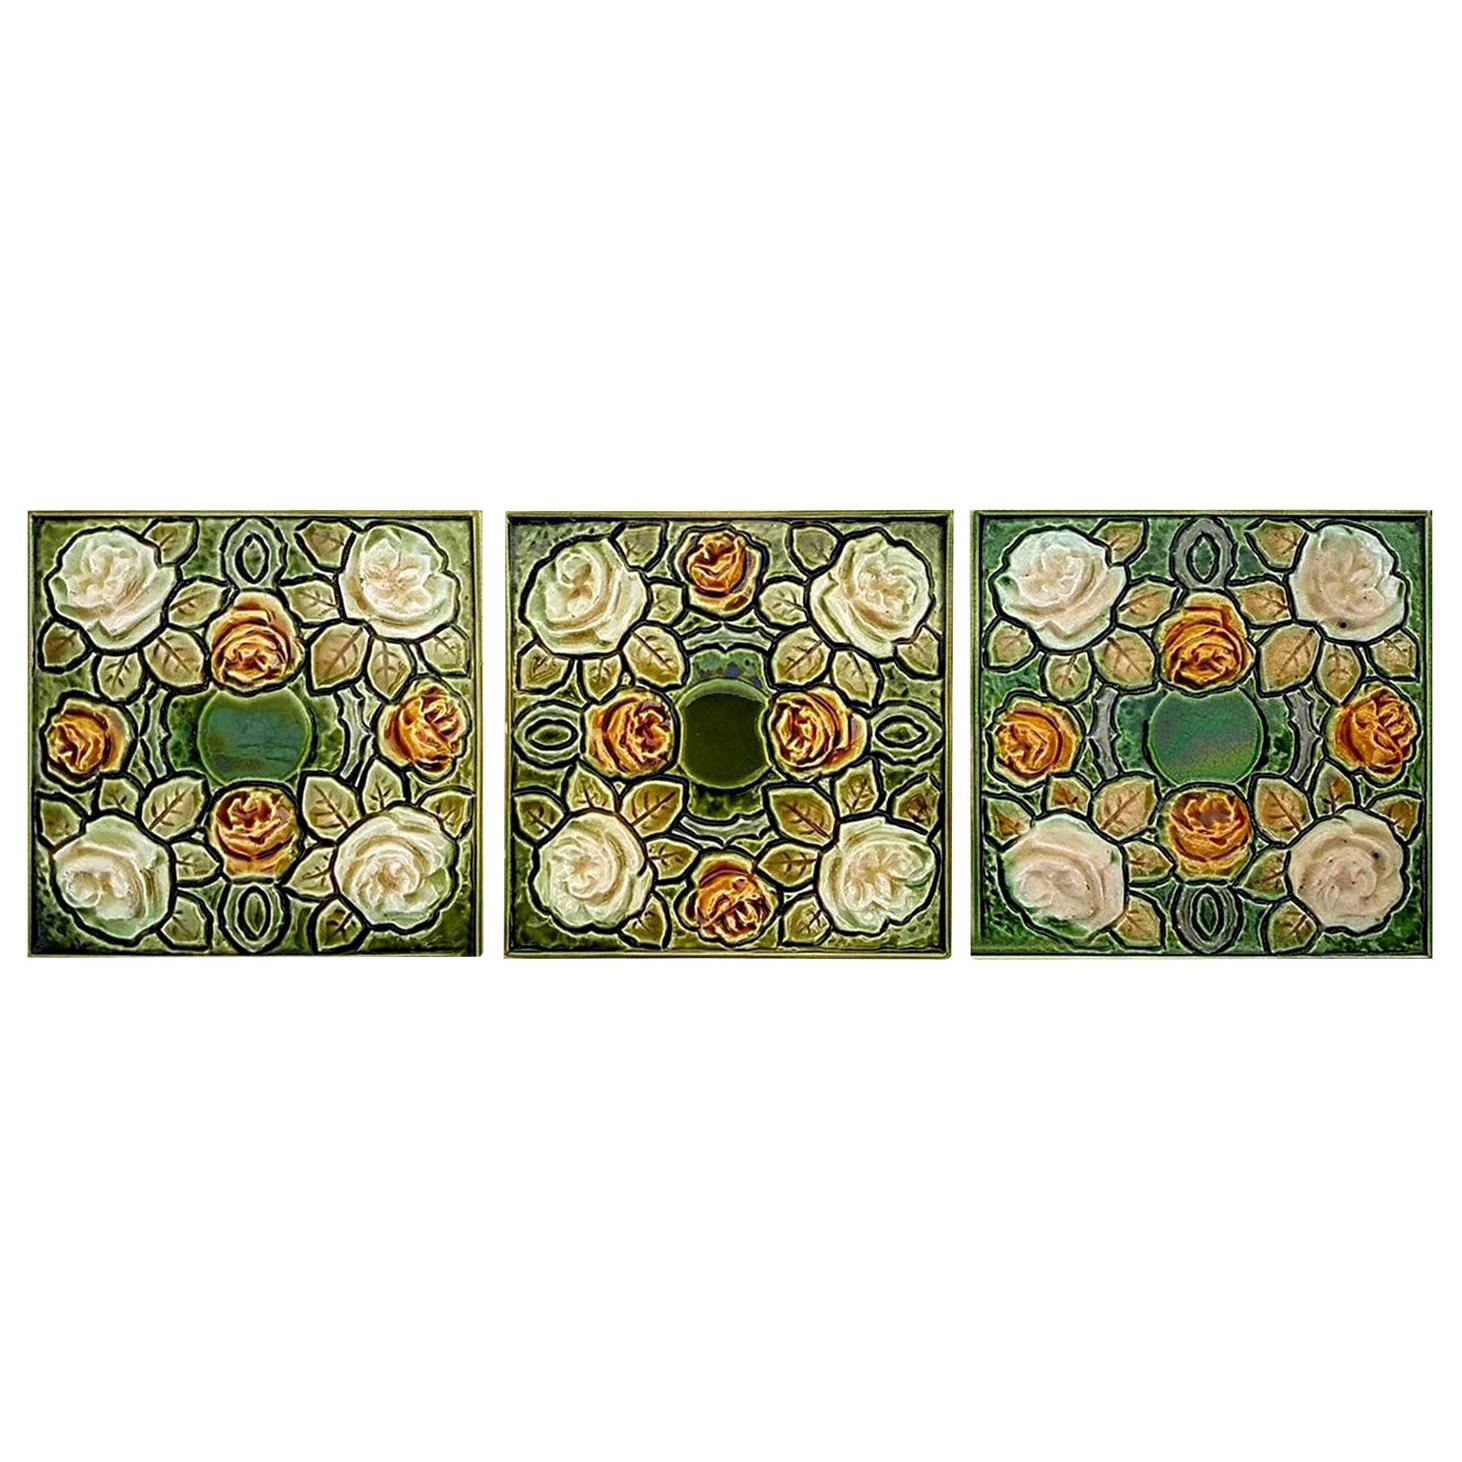 1 of the 20 Antique Glazed Art Nouveau Tiles, circa 1920